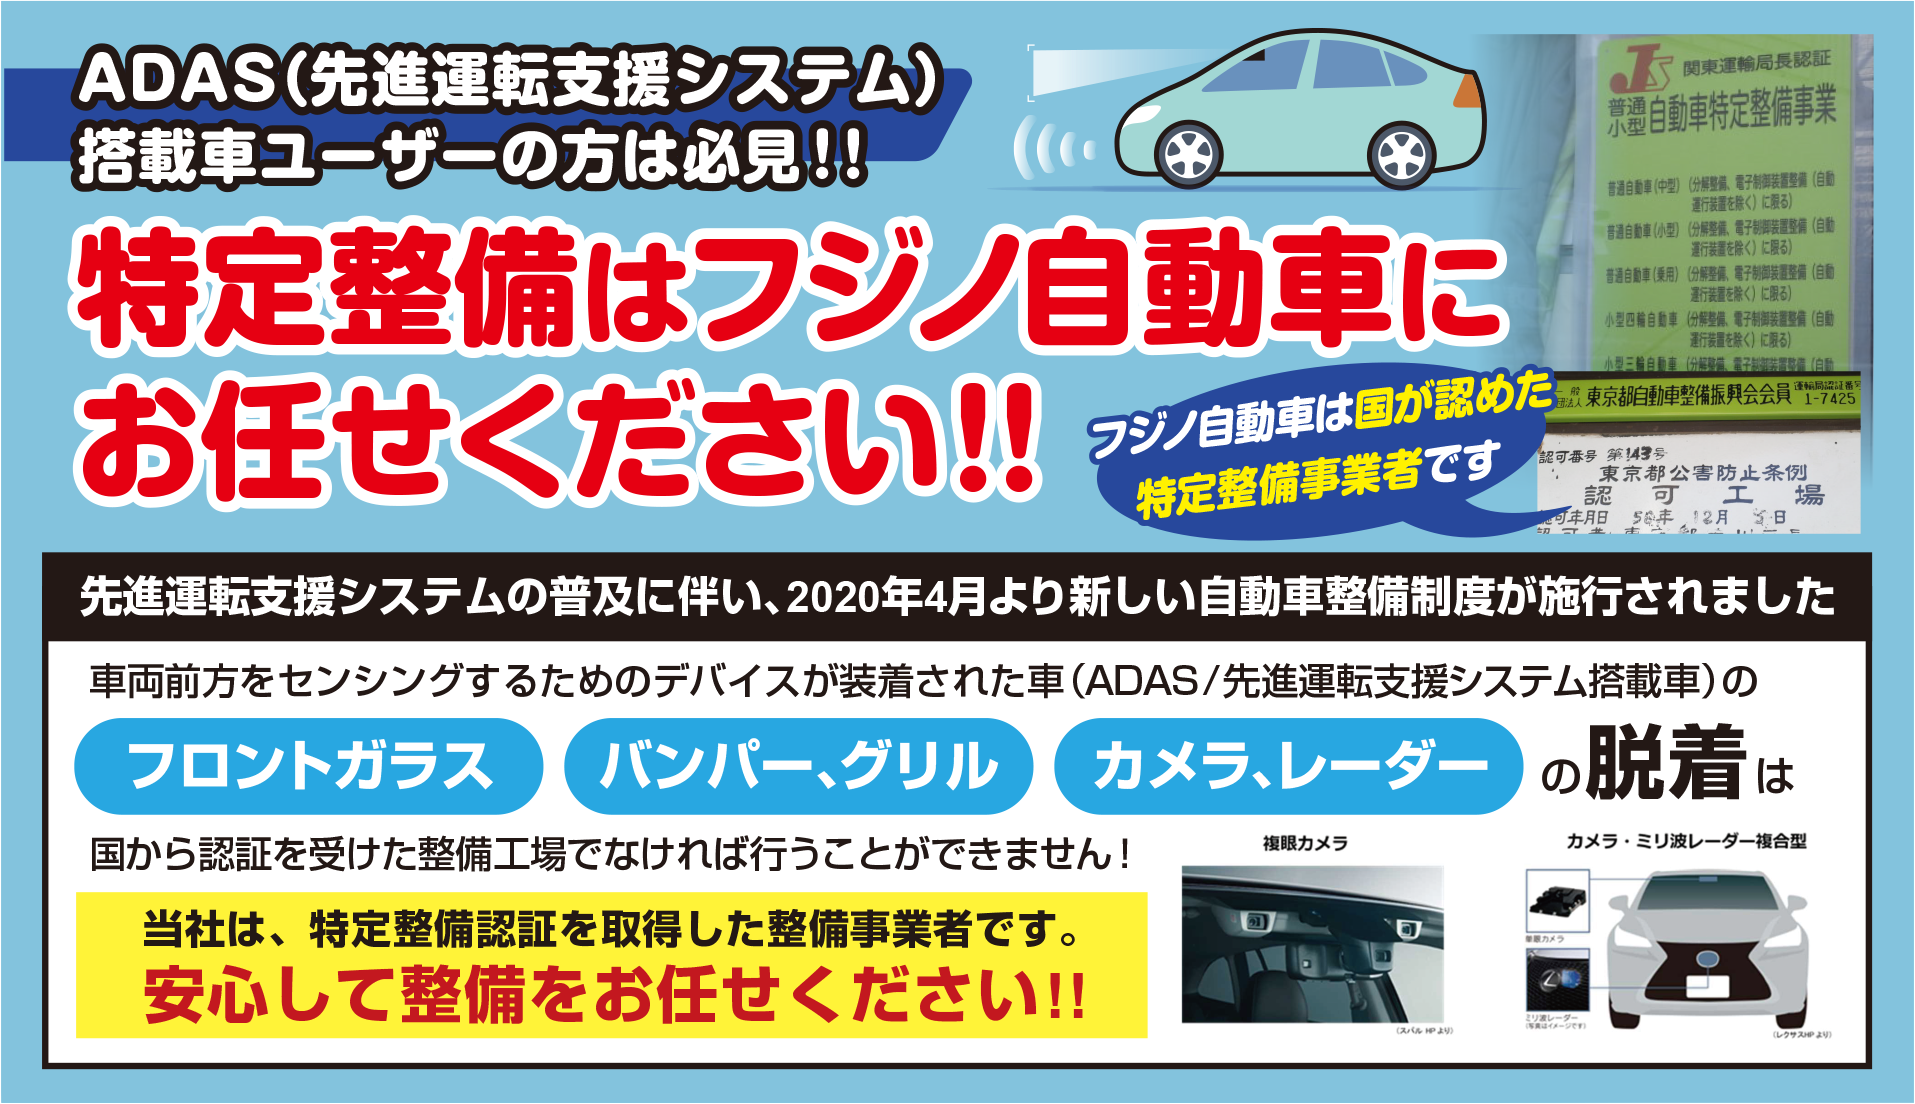 ADAS(先進運転支援システム)搭載車のユーザー様、特定整備はフジノ自動車にお任せください